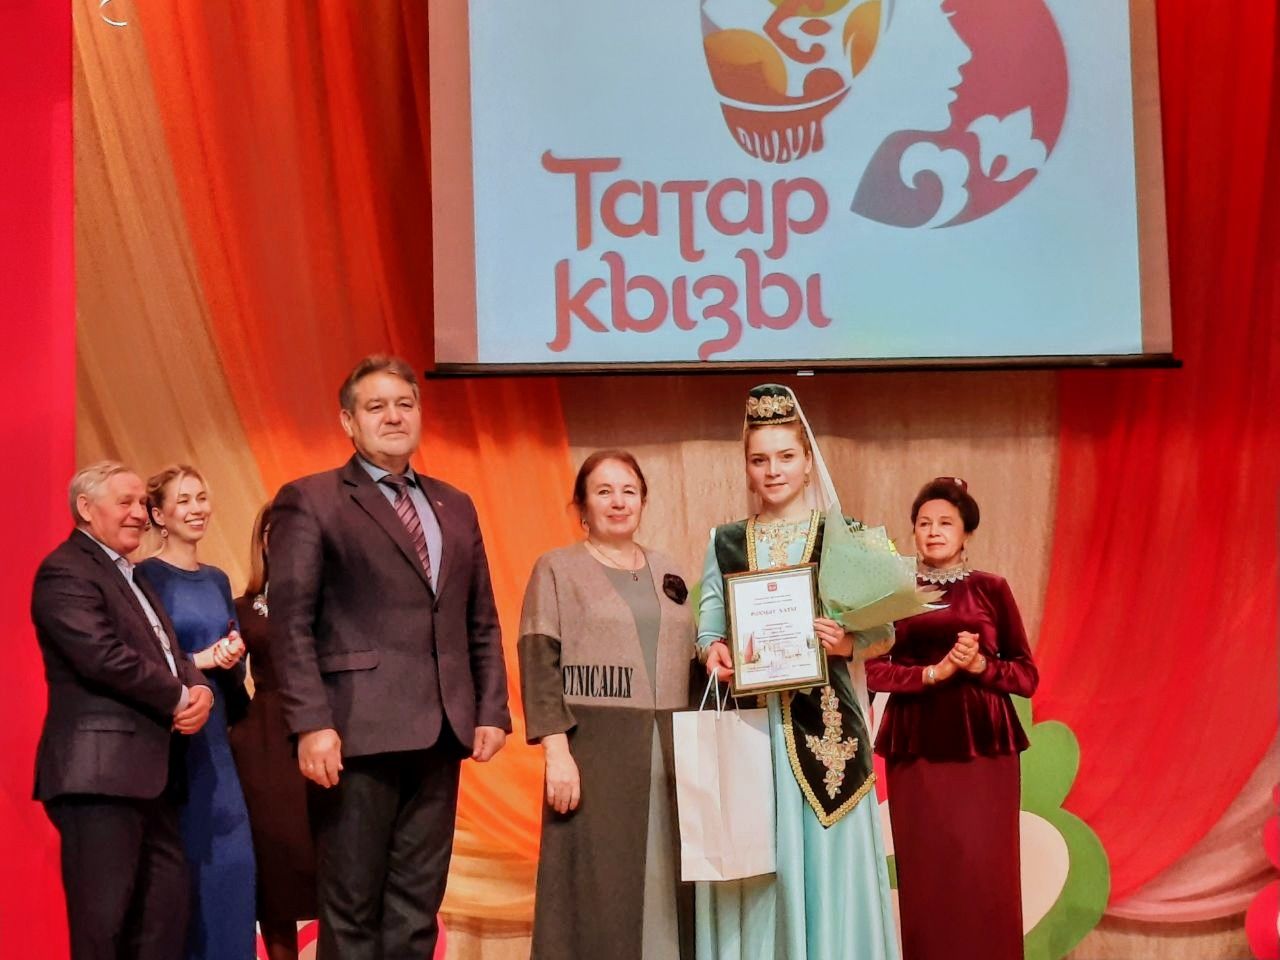 Студентка БВТ вышла в полуфинал конкурса "Татар кызы"